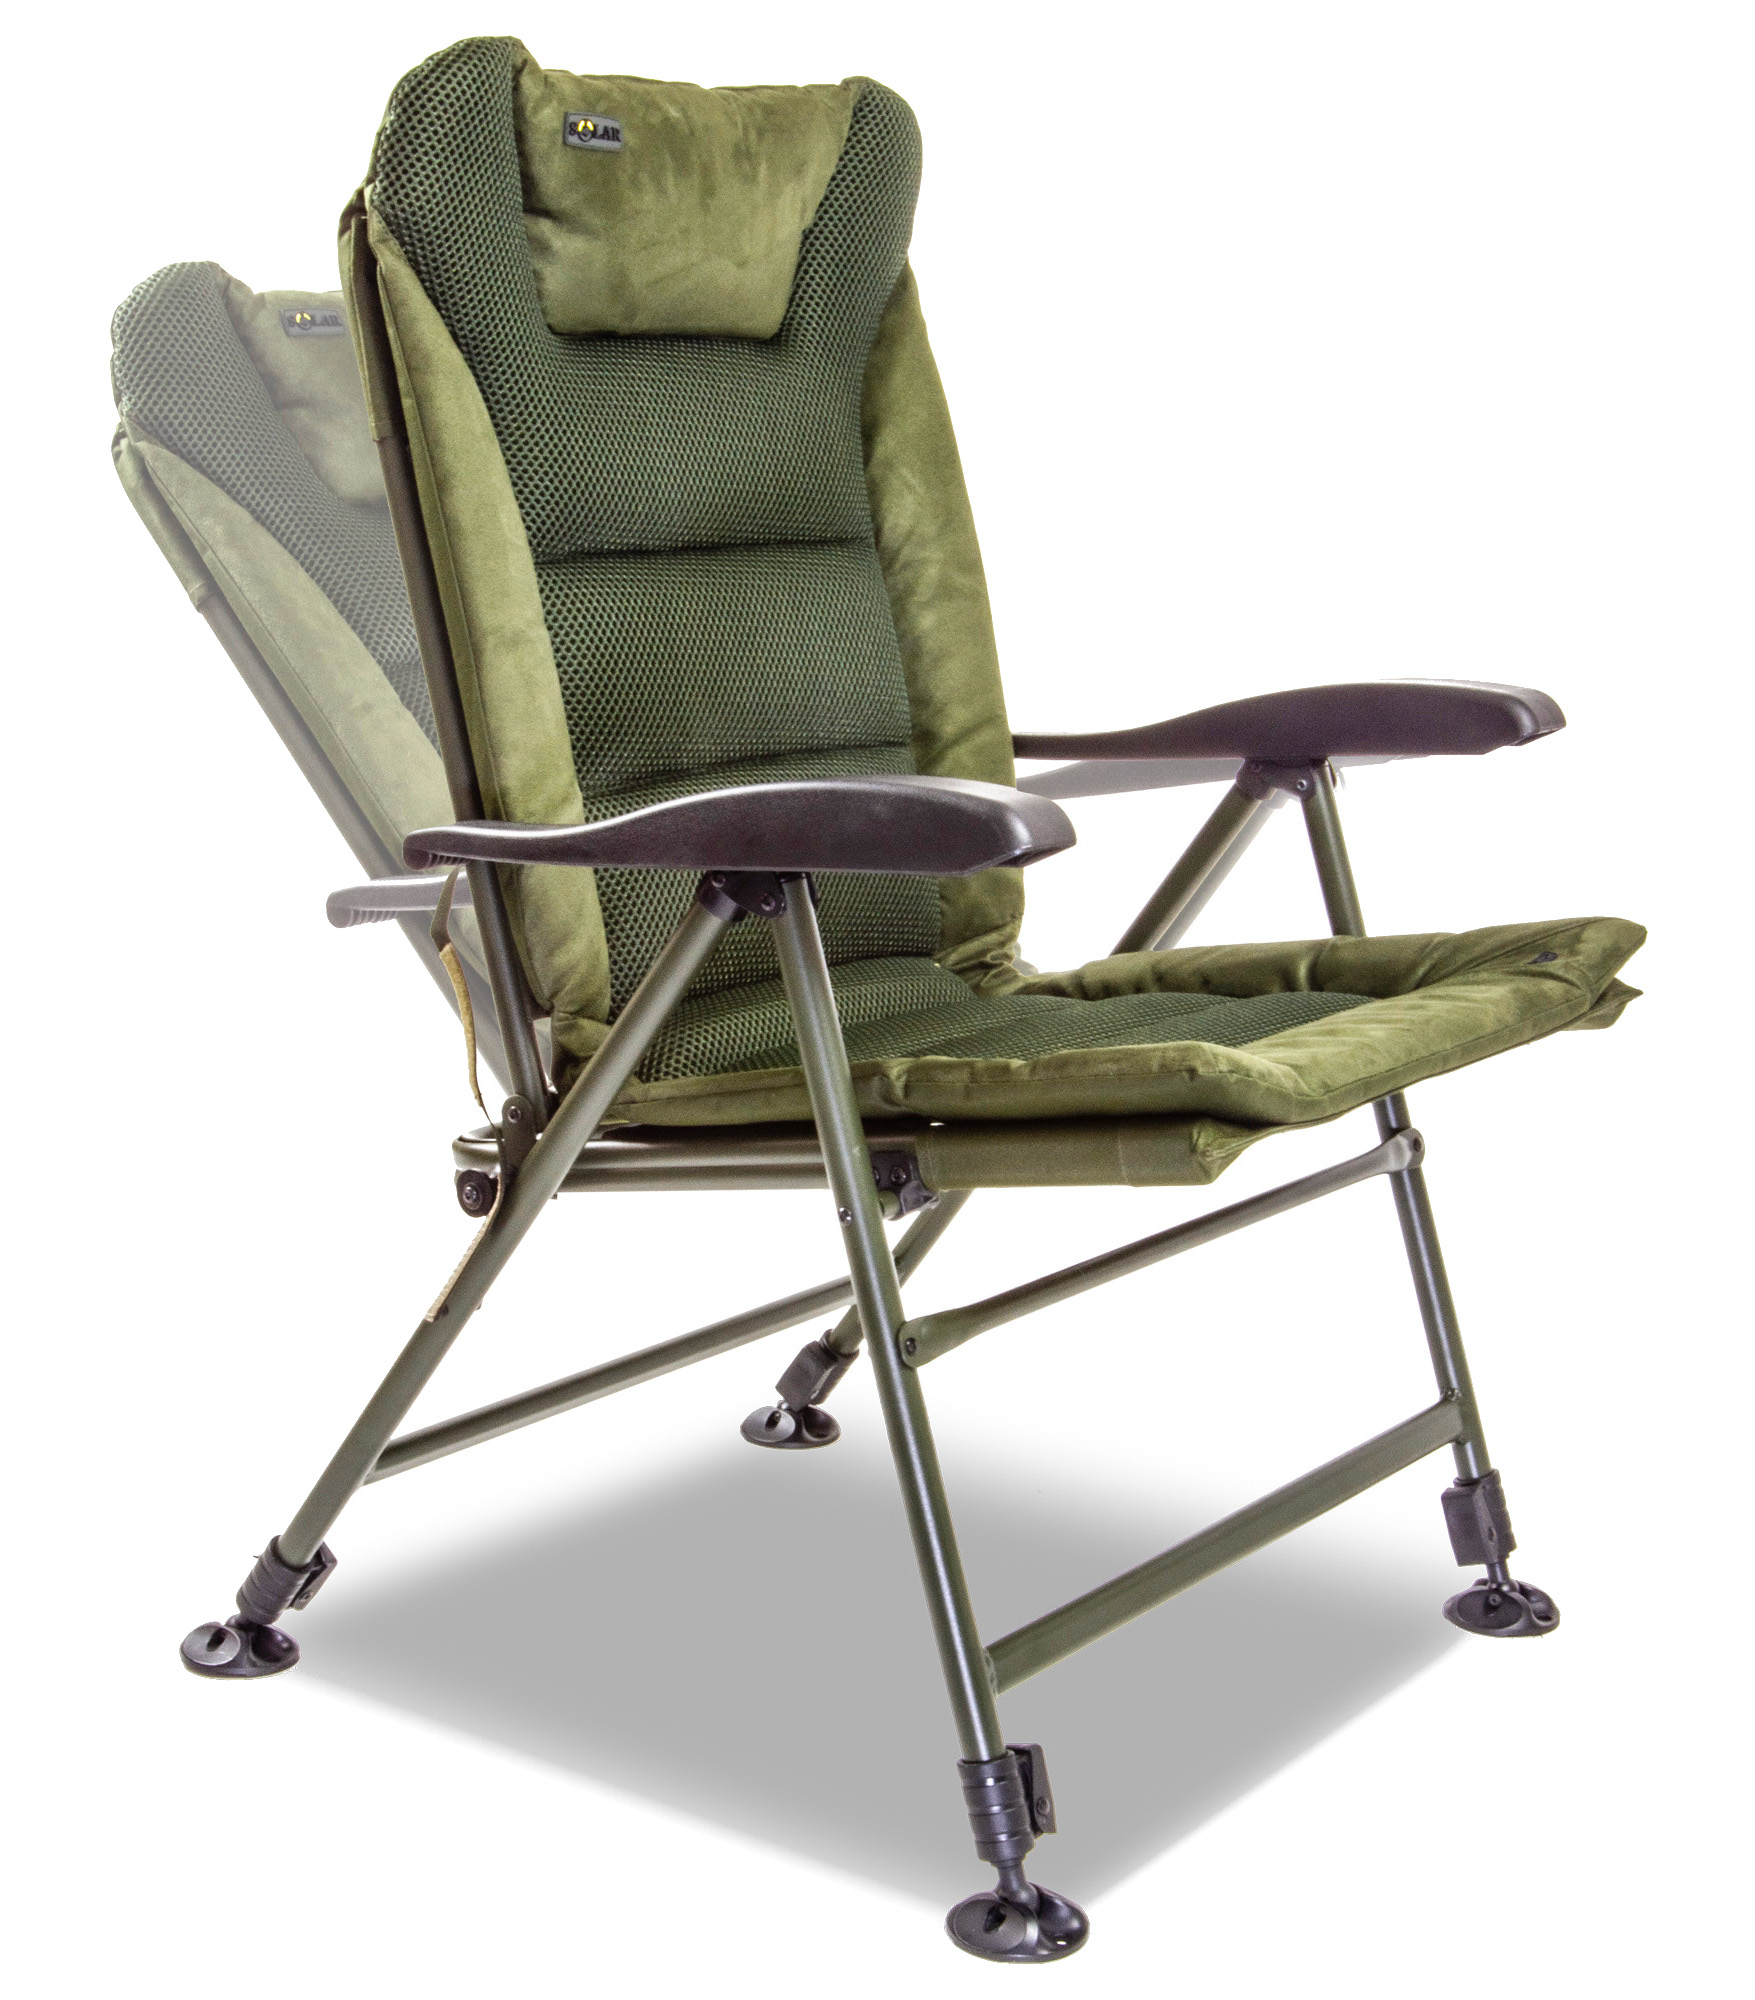 Solar SP Recliner Chair MKII Carp Chair - High